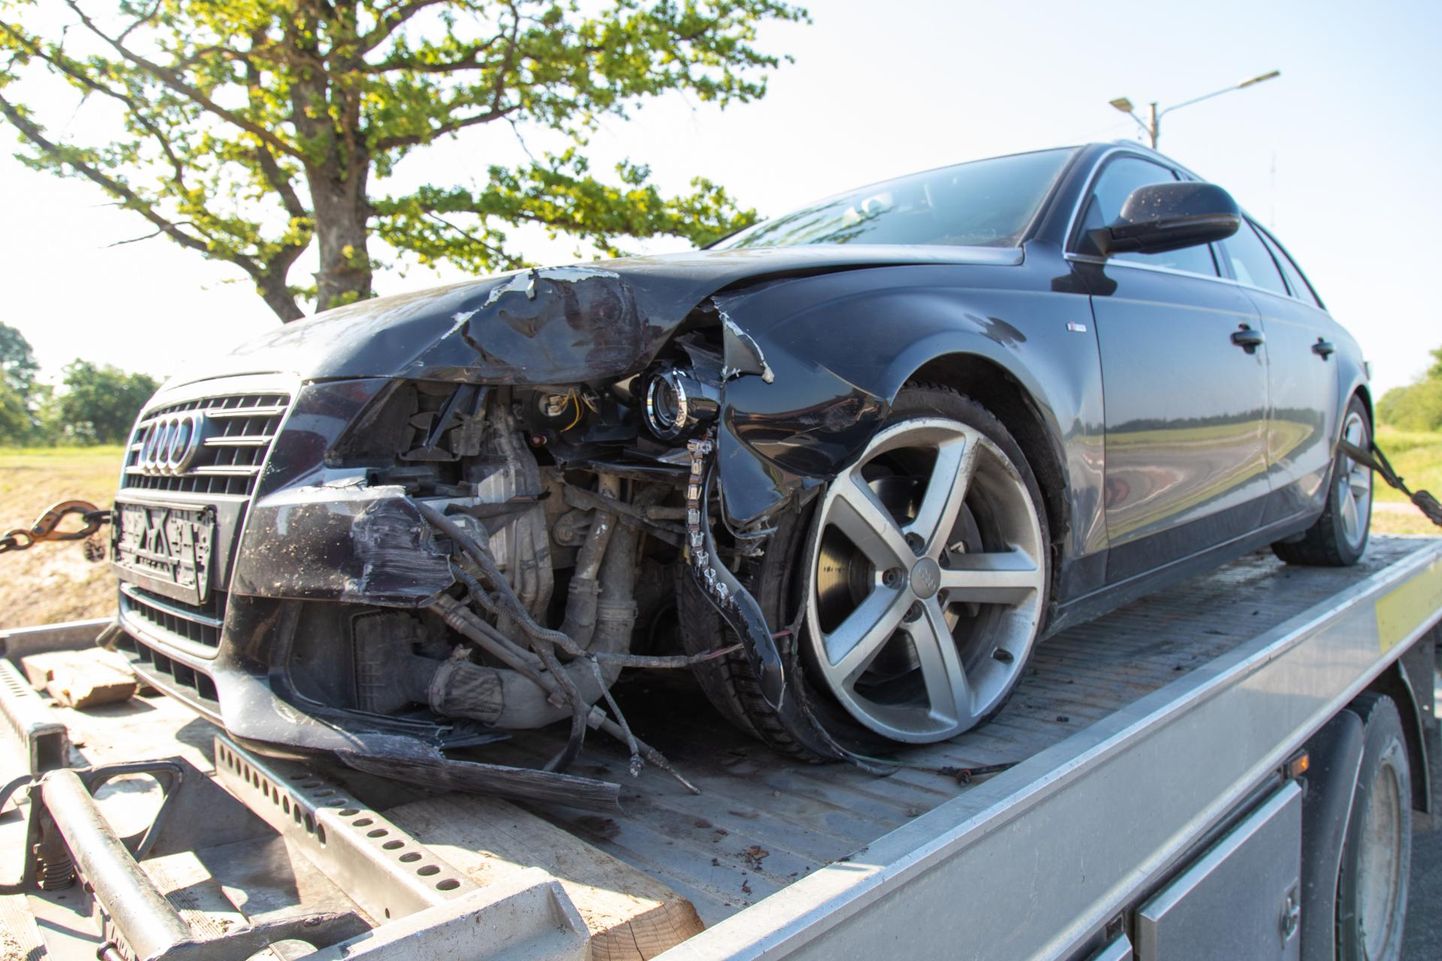 Õnnetuses sai kannatada sõduauto Audi. Inimesed viga ei saanud.